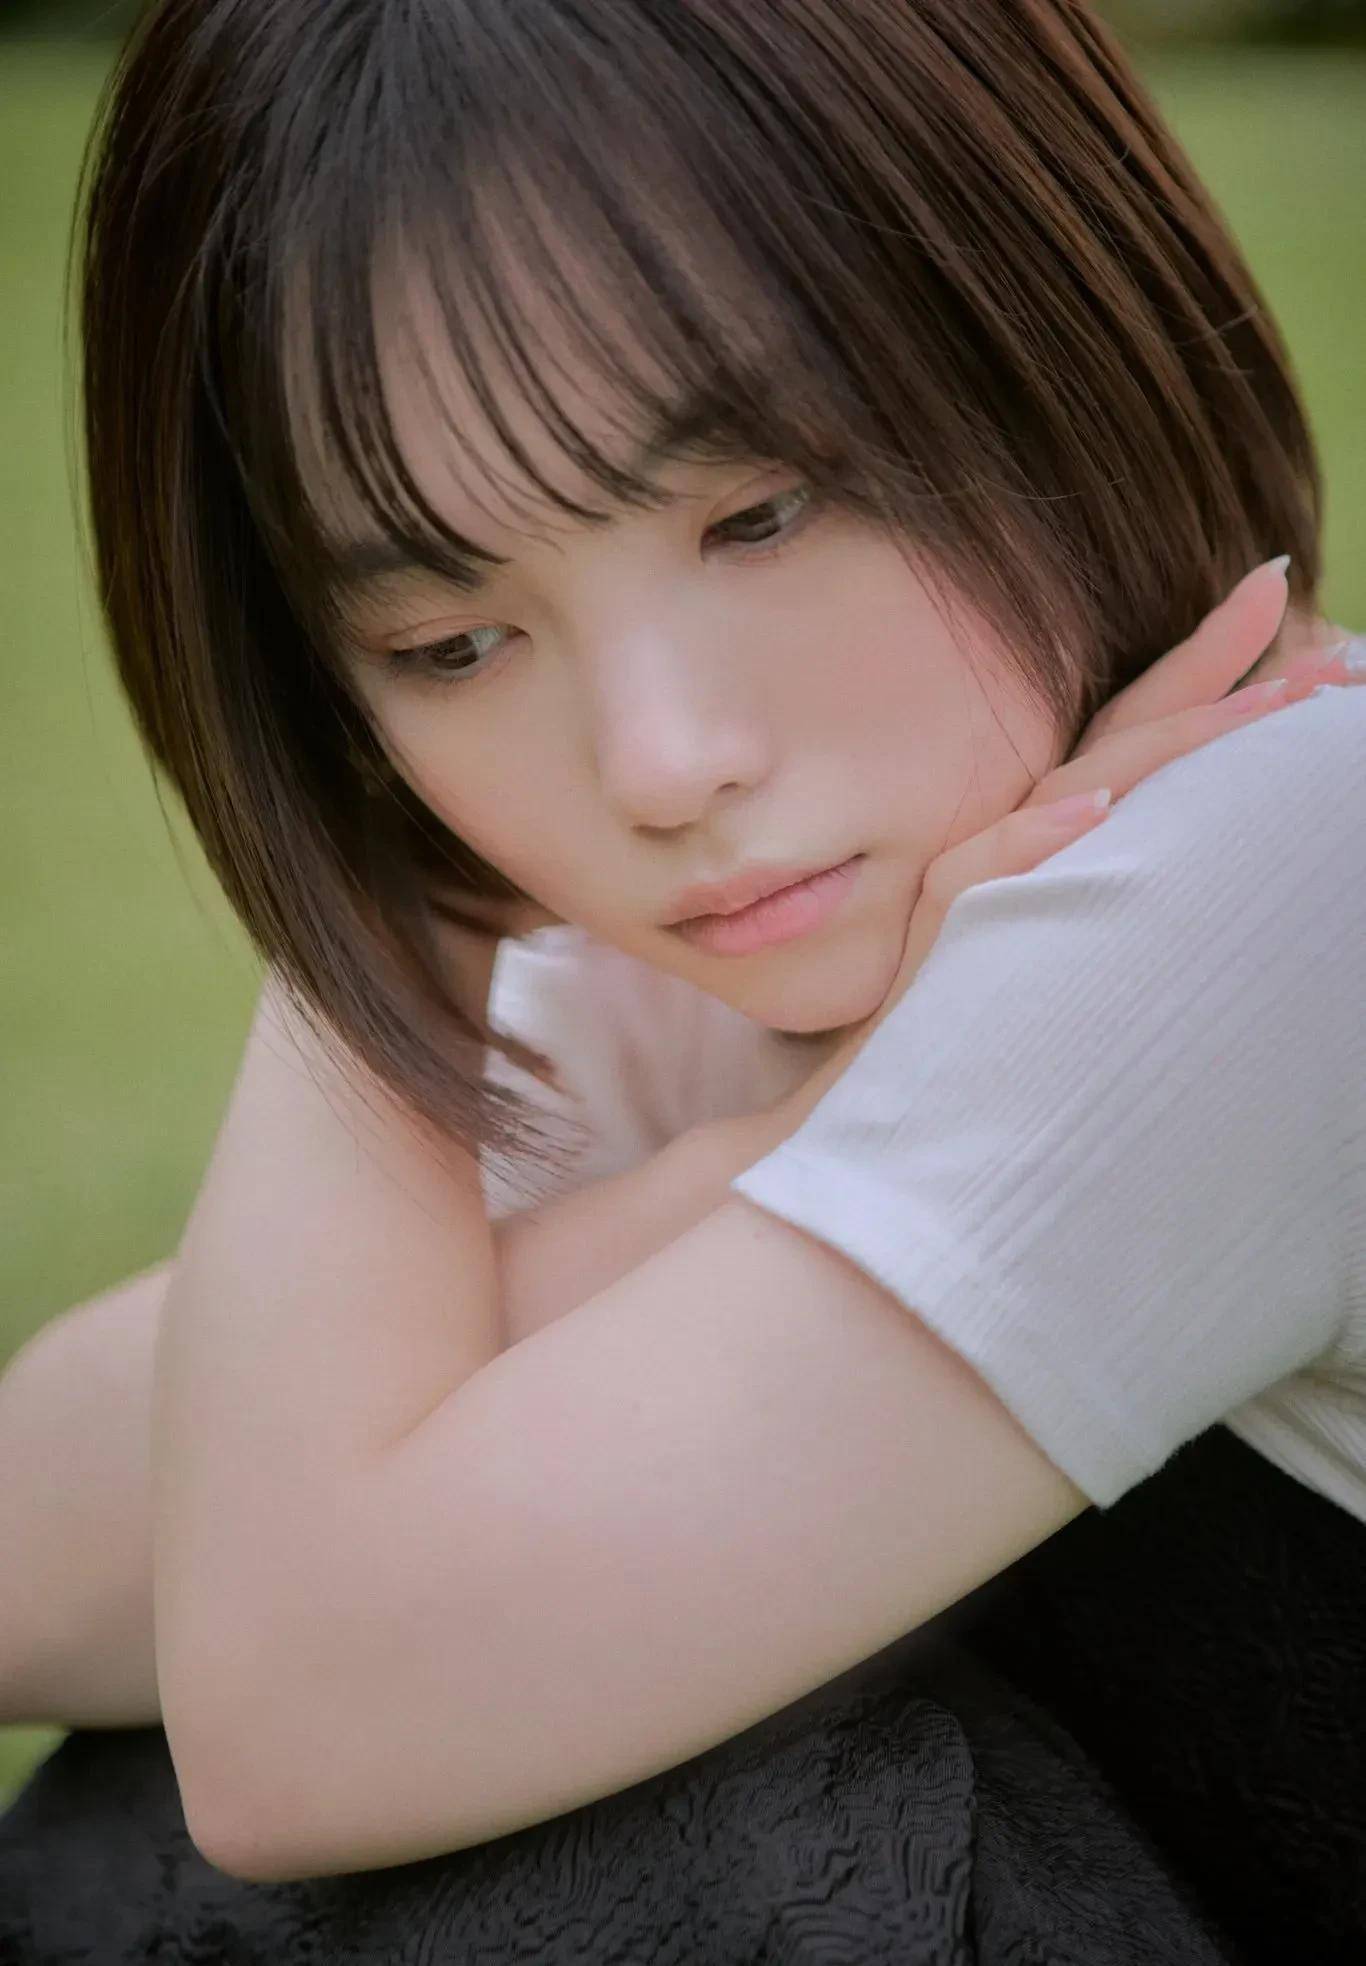 19岁的日本短发美女,清纯活力好身材灵气满满!